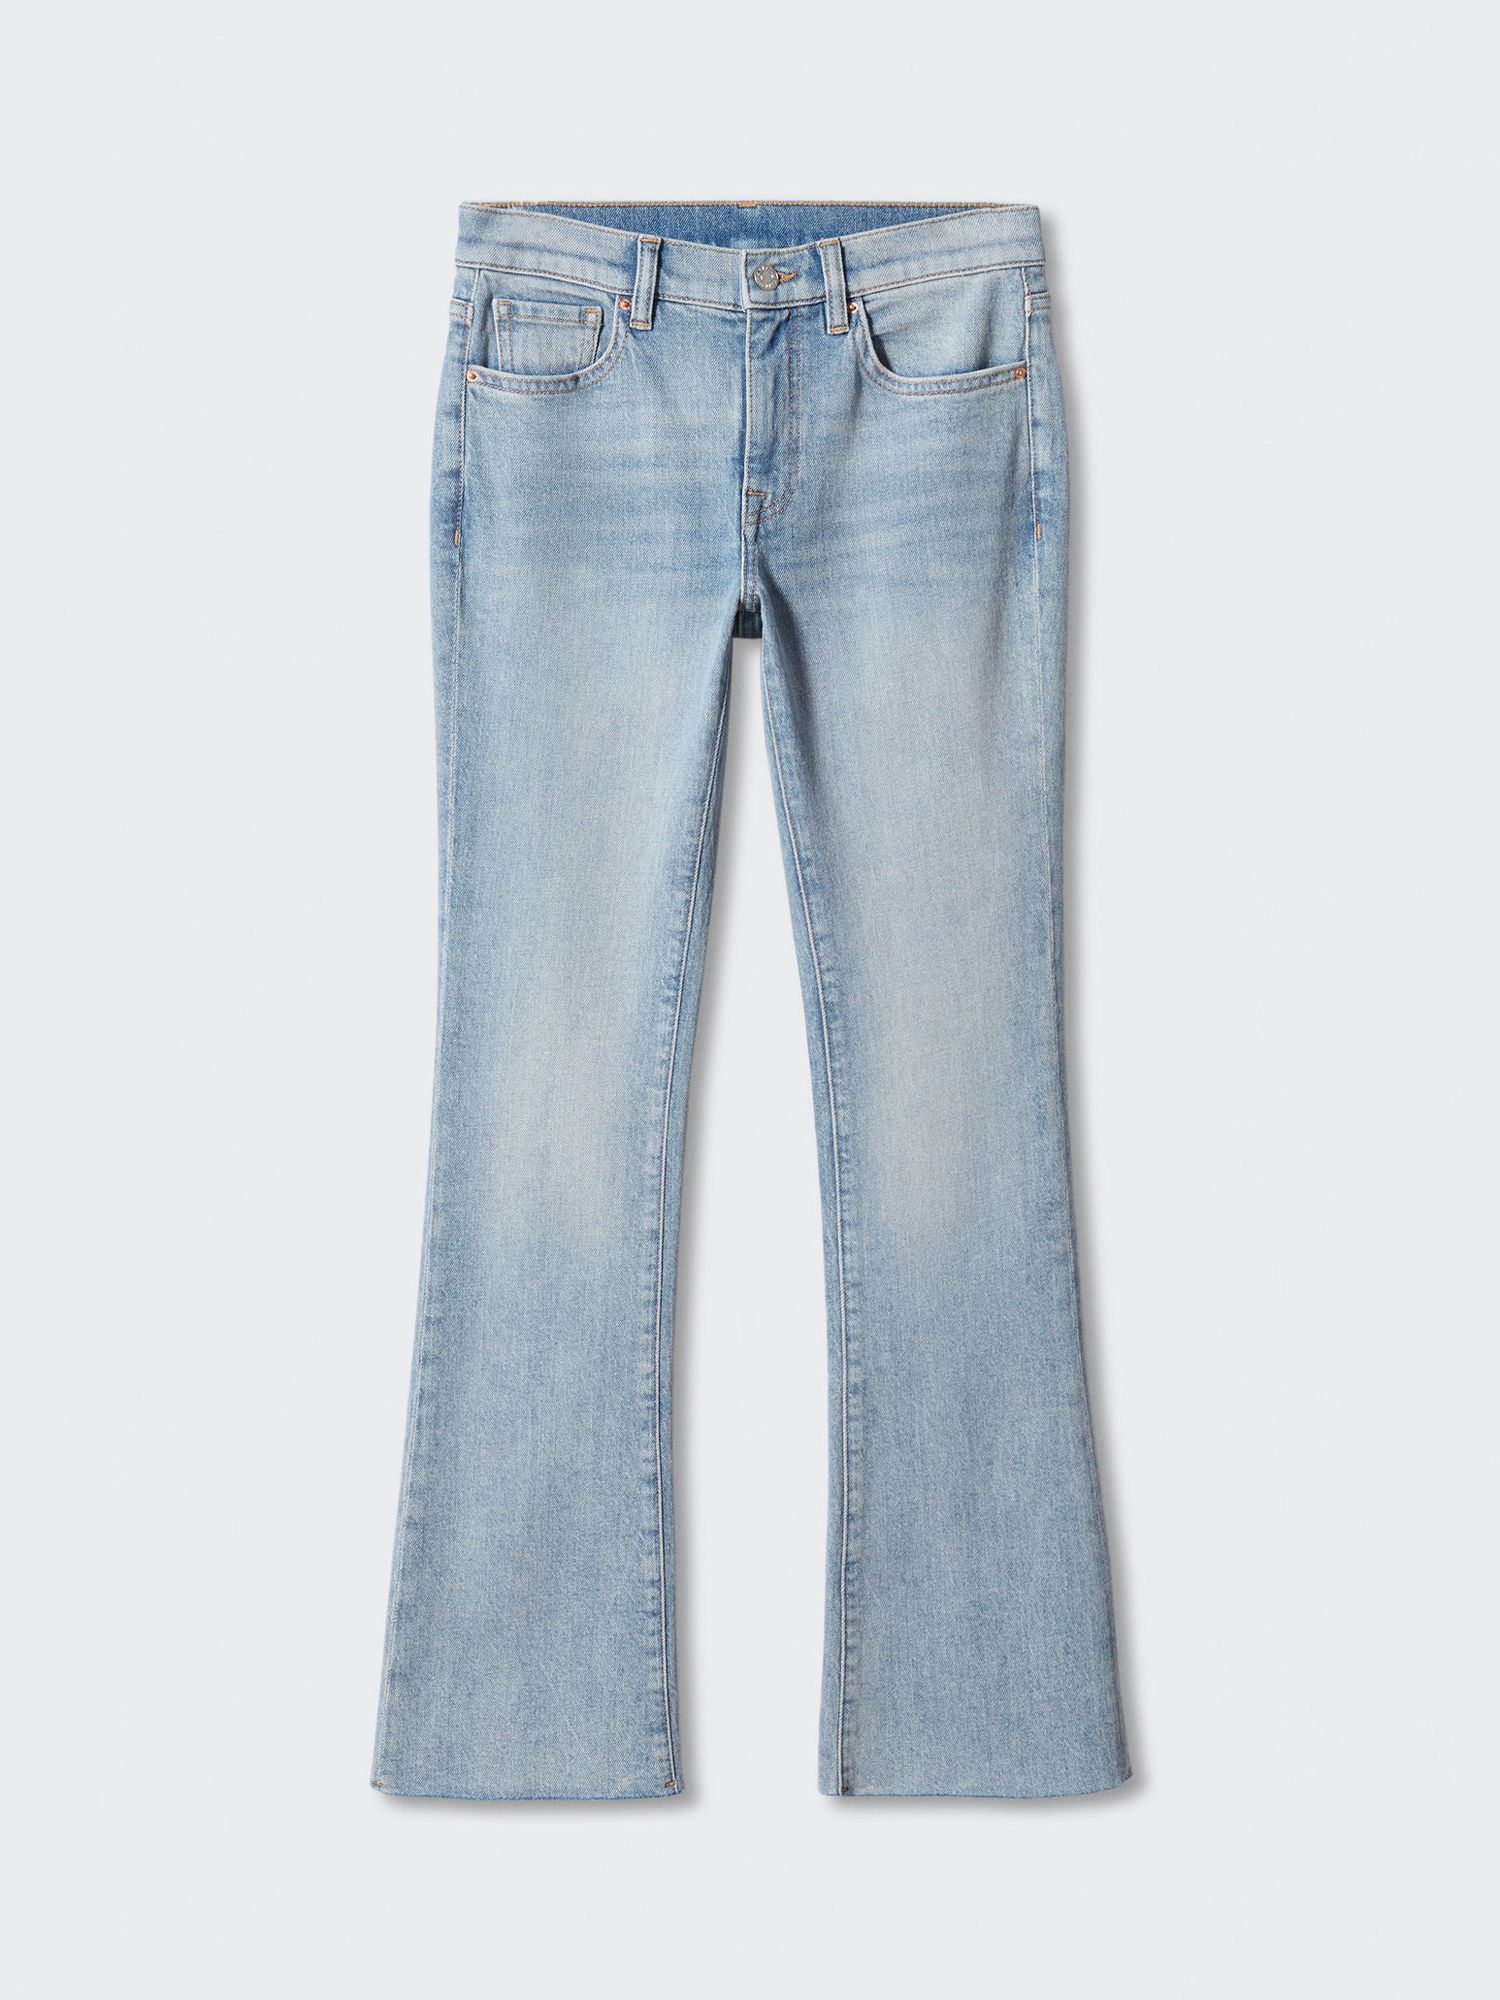 Mango Dafne Low Rise Flare Jeans, Open Blue, 4